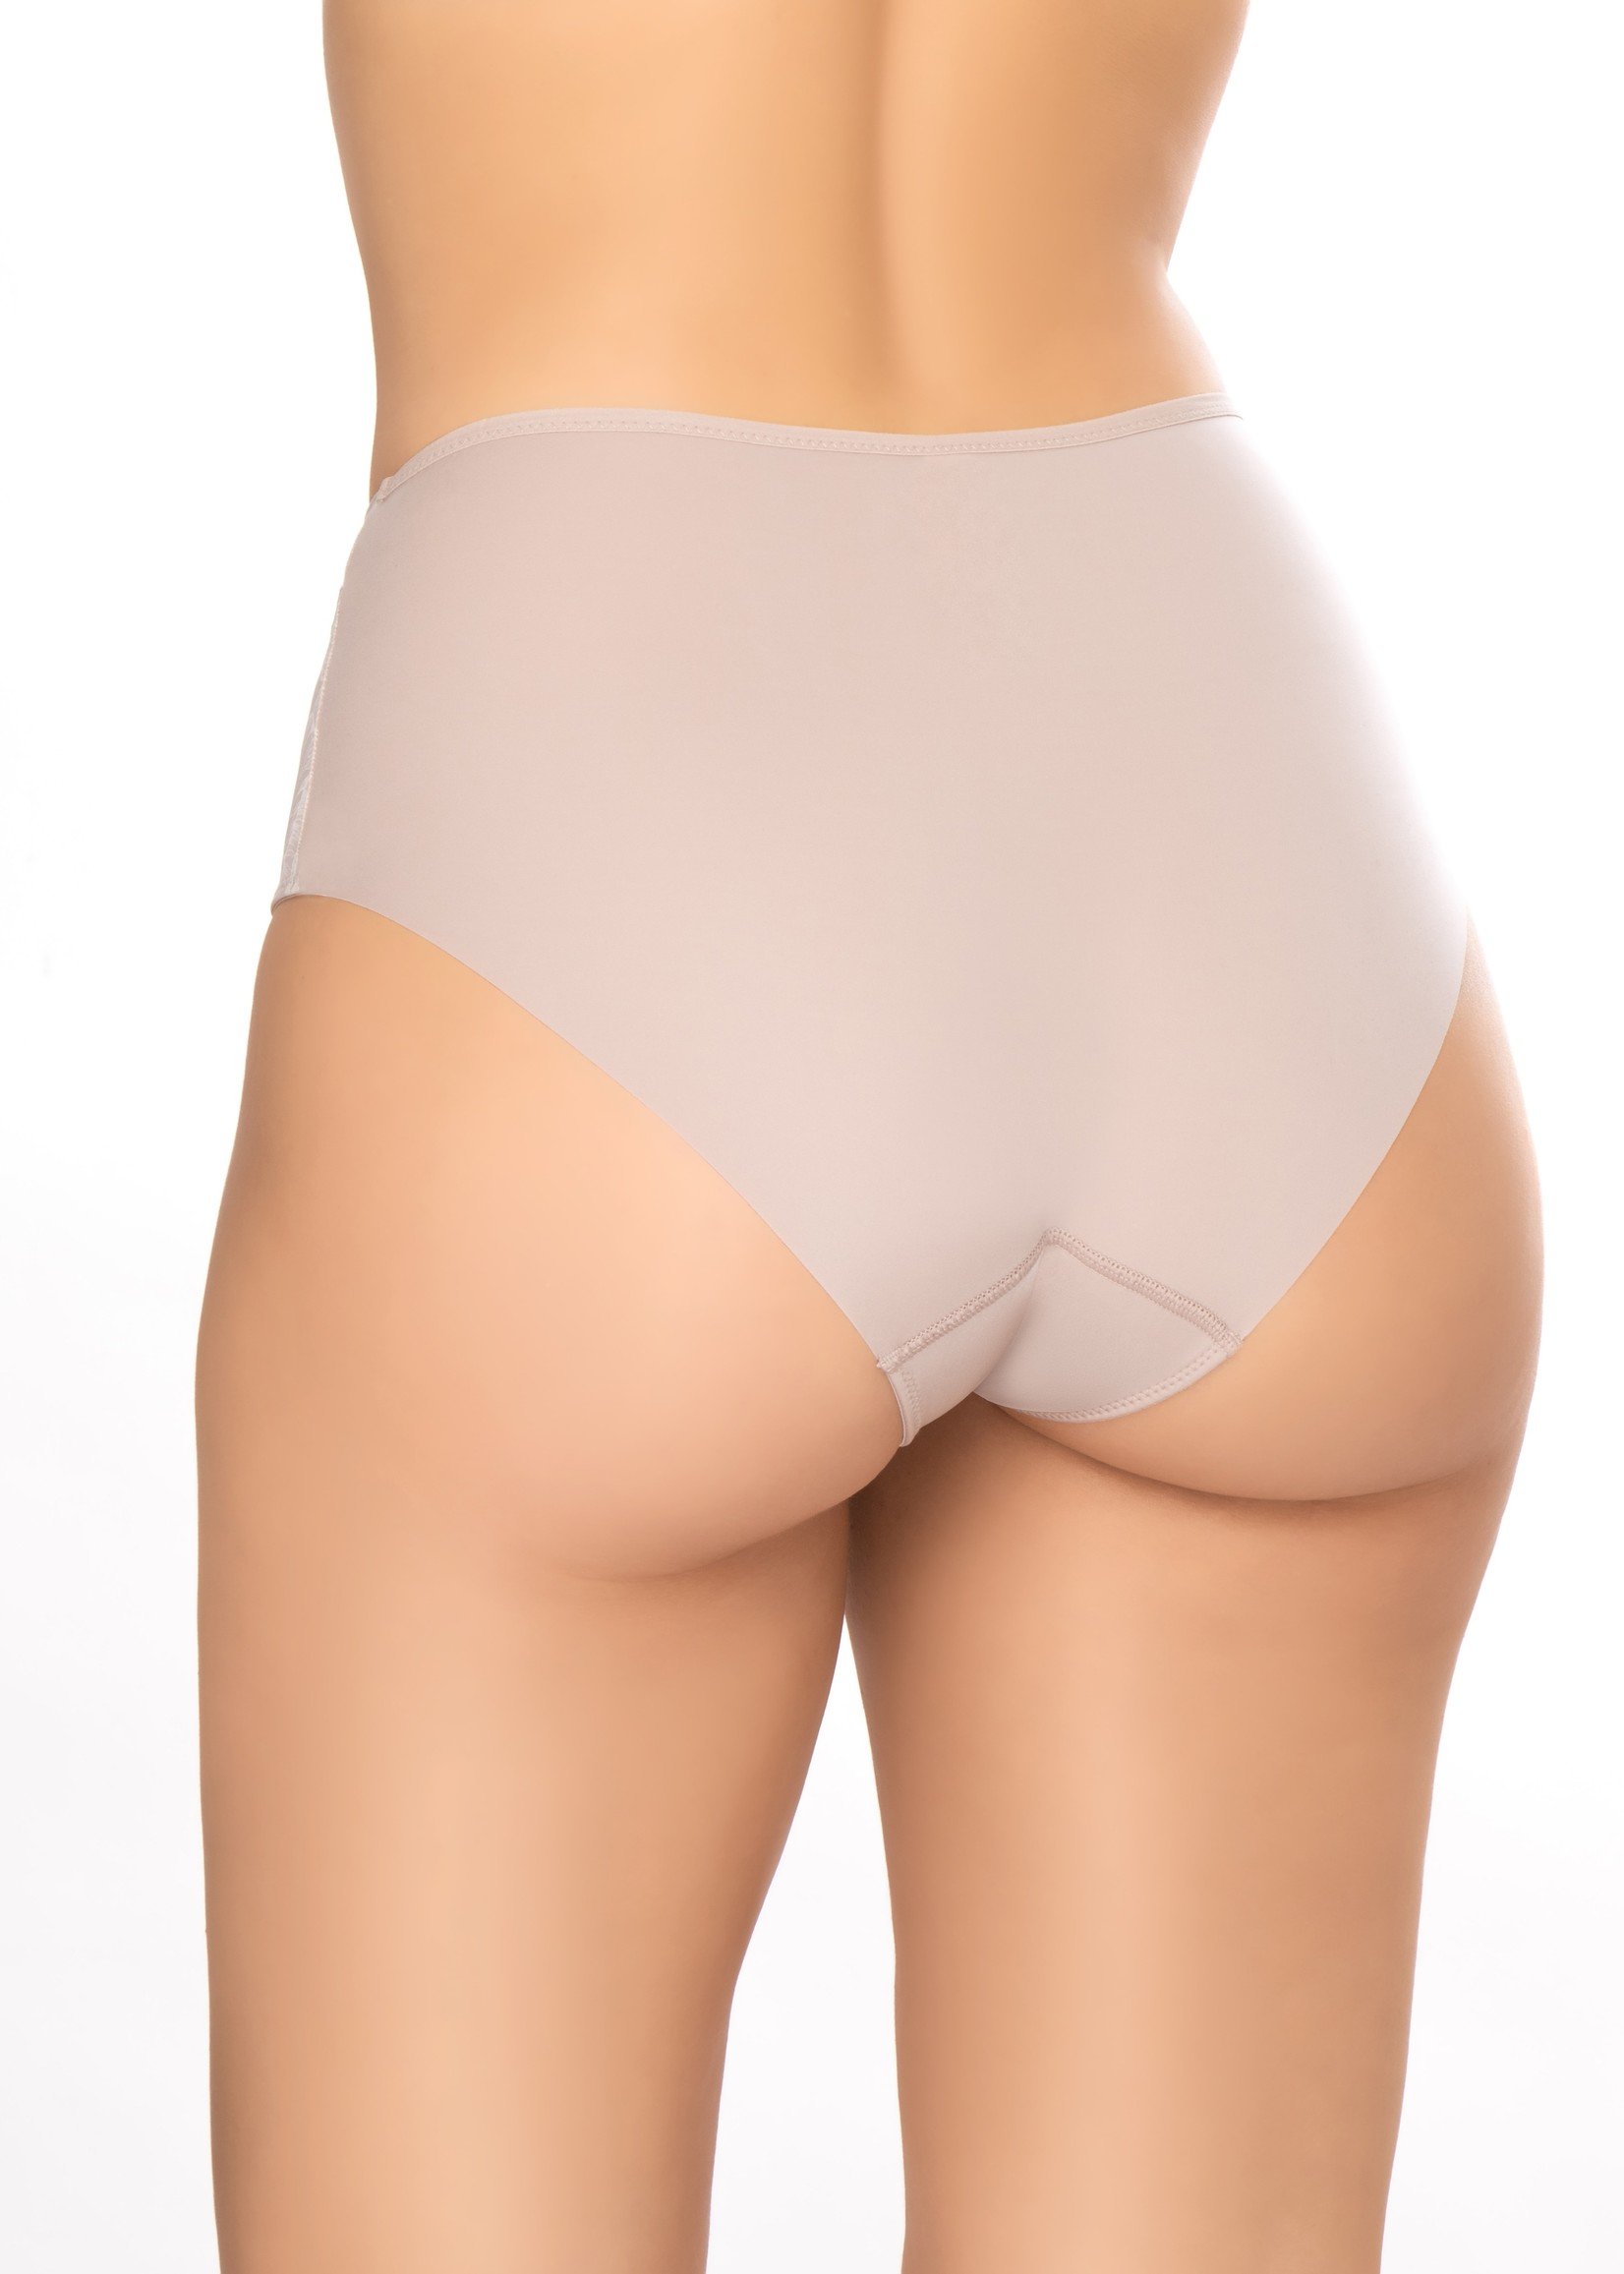 Felina underwear for plus size women